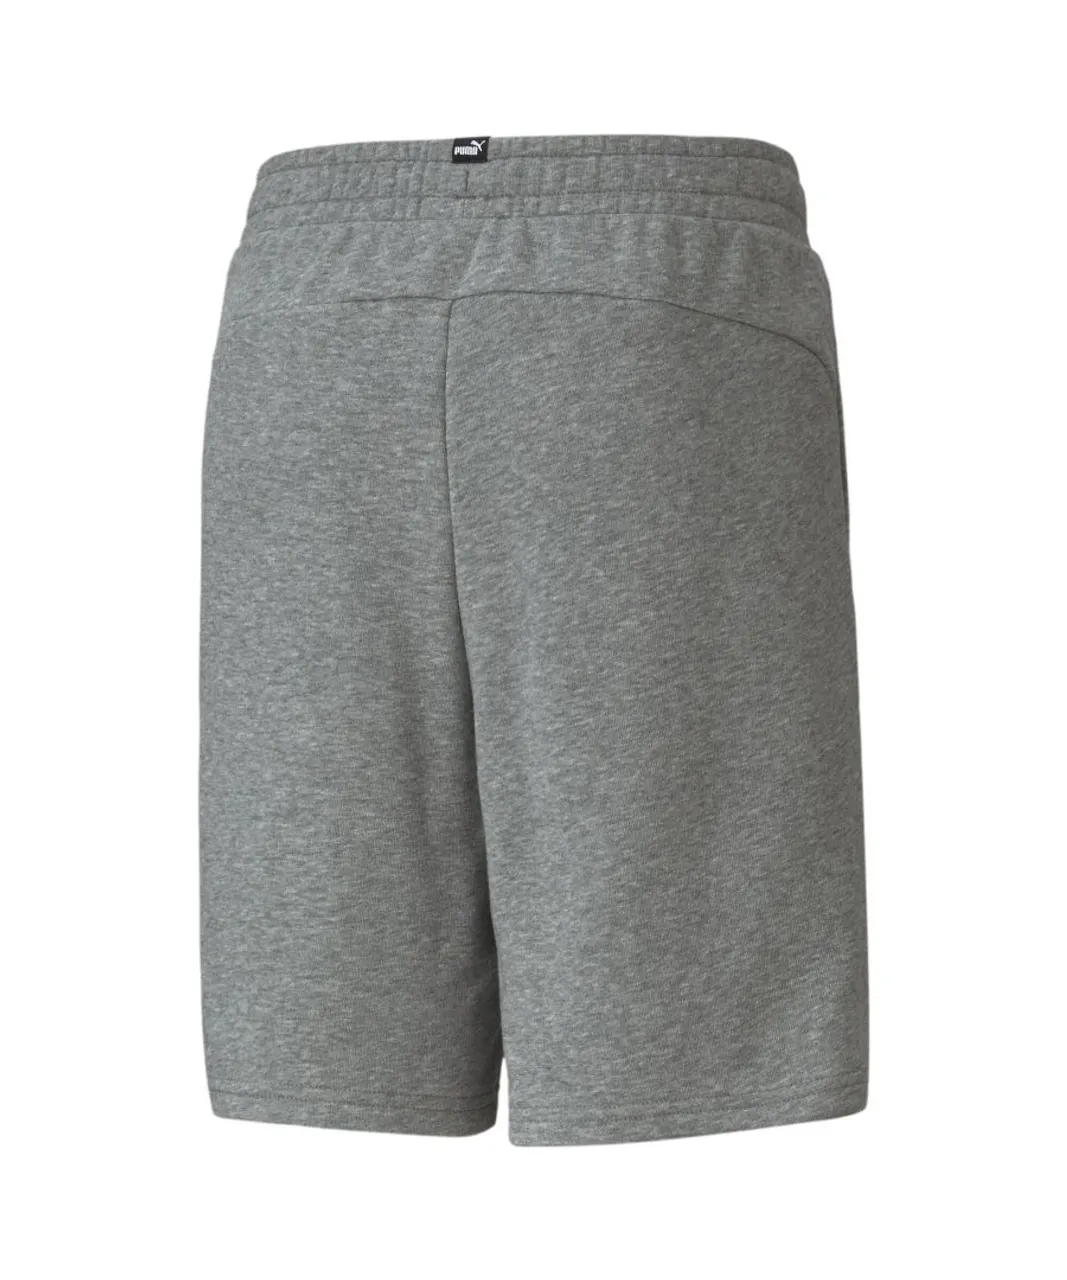 Puma Childrens Unisex Essentials Youth Sweat Shorts - Grey Cotton